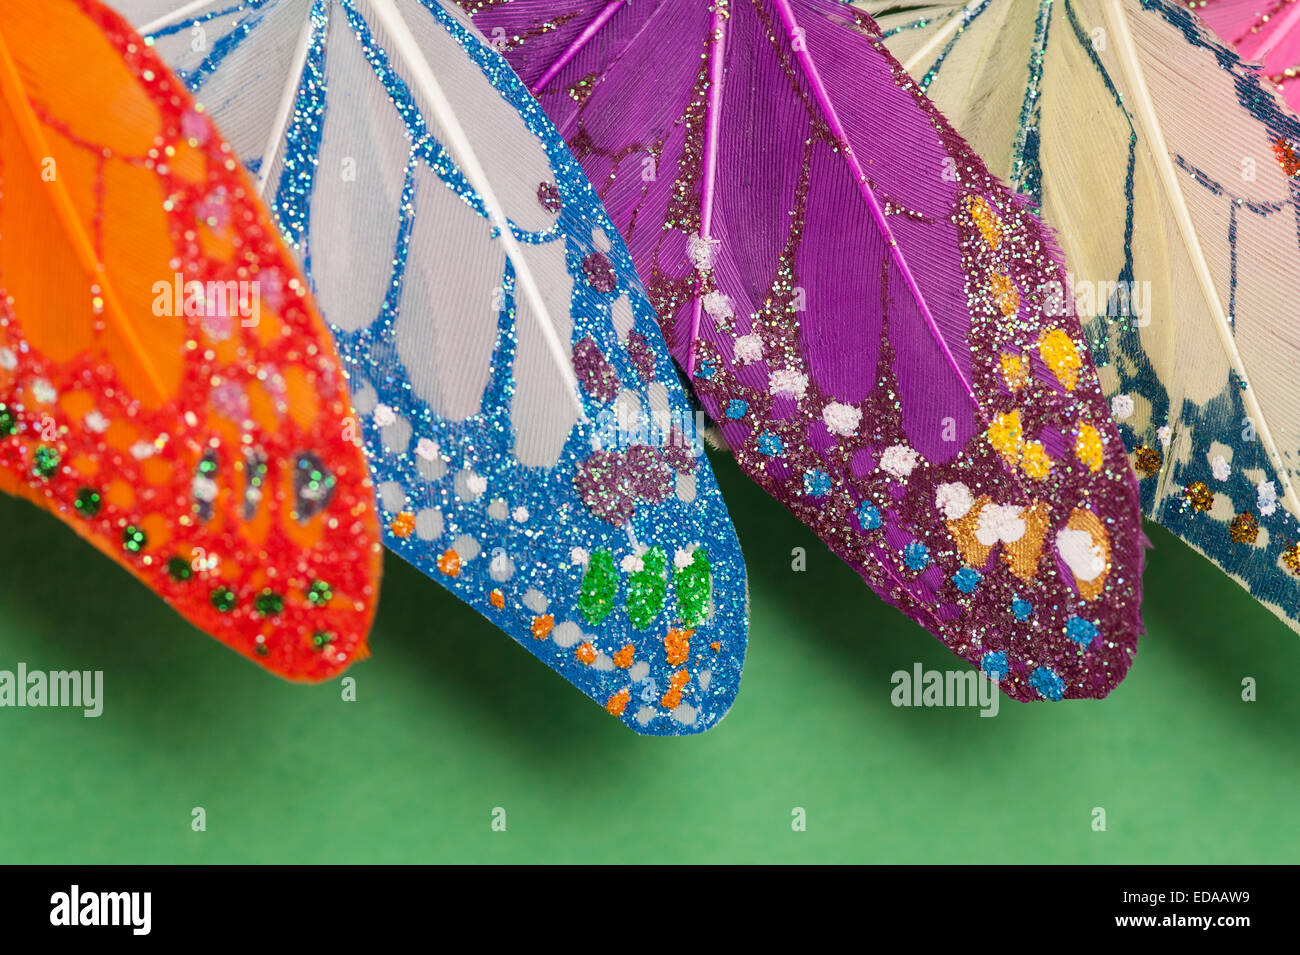 Le plumage des oiseaux décorés de motifs colorés Banque D'Images